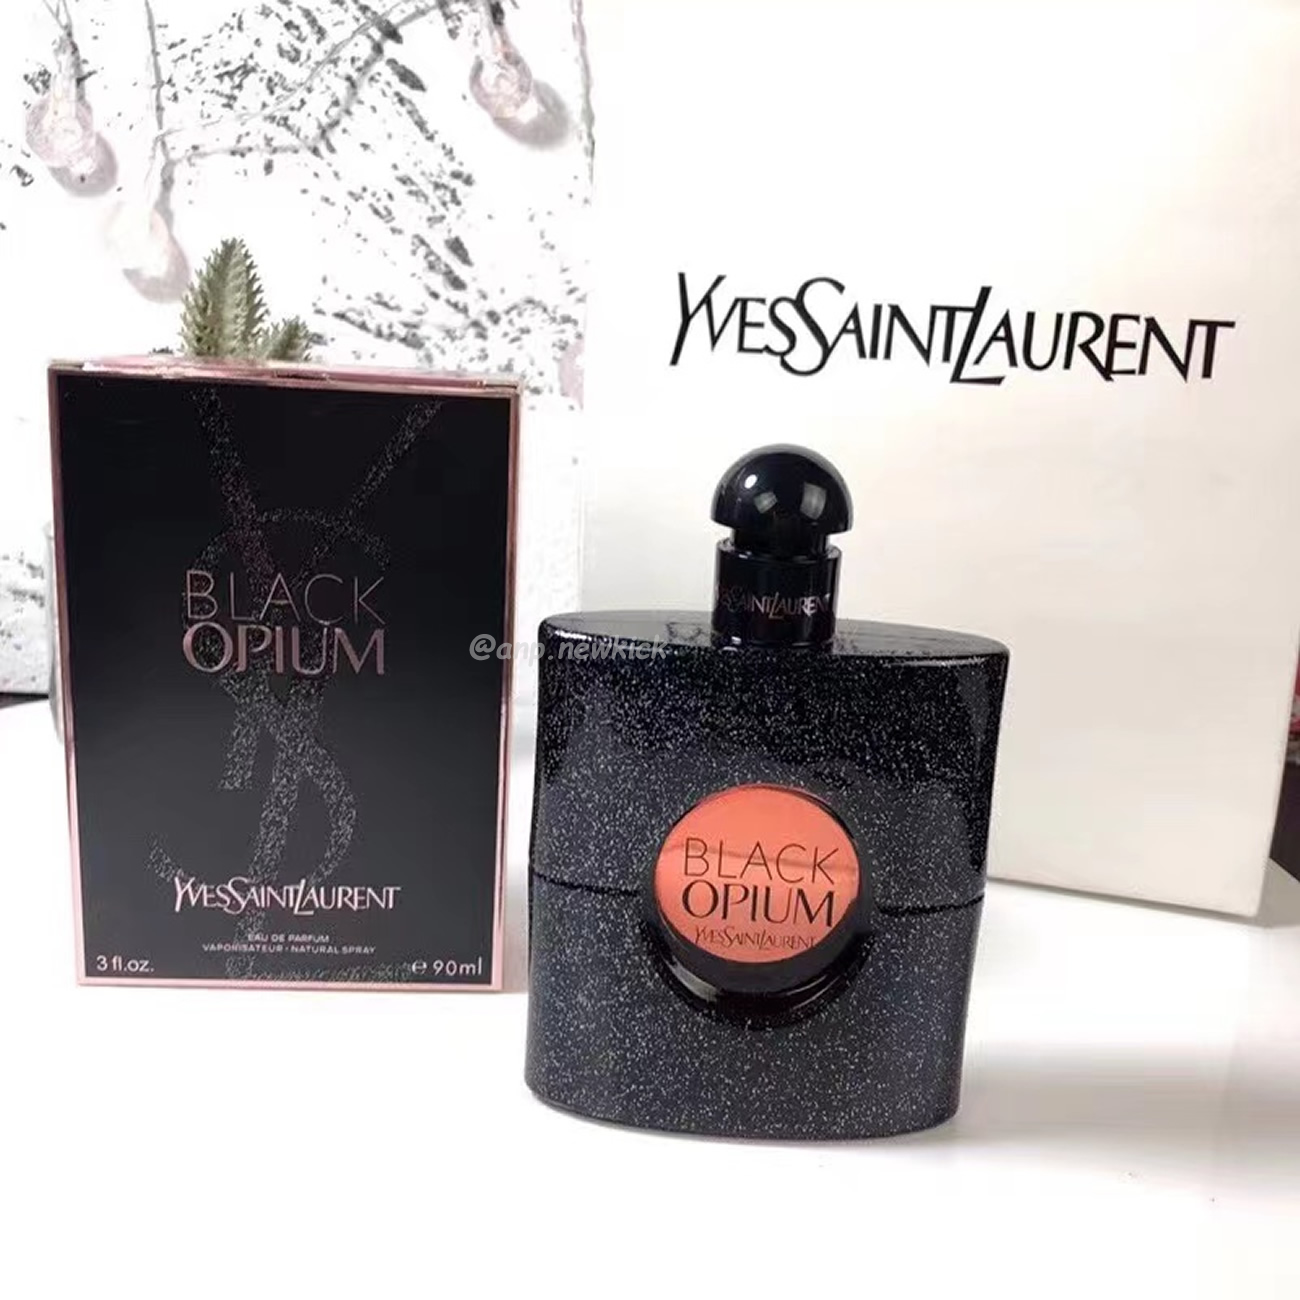 Yves Saint Laurent Ysl Black Opium Edp 90ml (7) - newkick.org